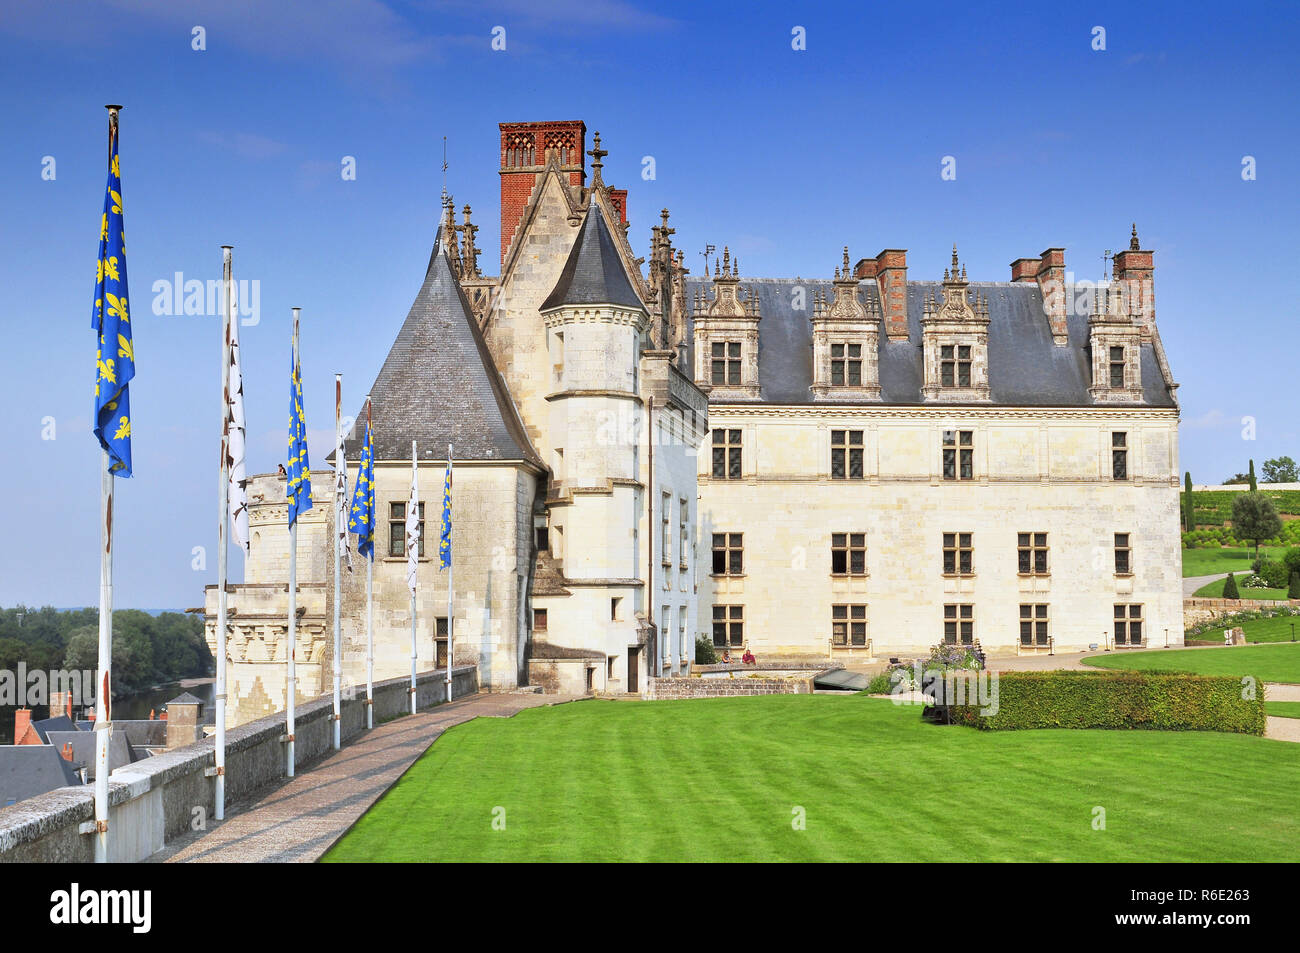 Chateau D'Amboise France Ce Château Royal est situé à Amboise, dans la vallée de la Loire a été construit dans le 15ème siècle et est une attraction touristique, France Banque D'Images